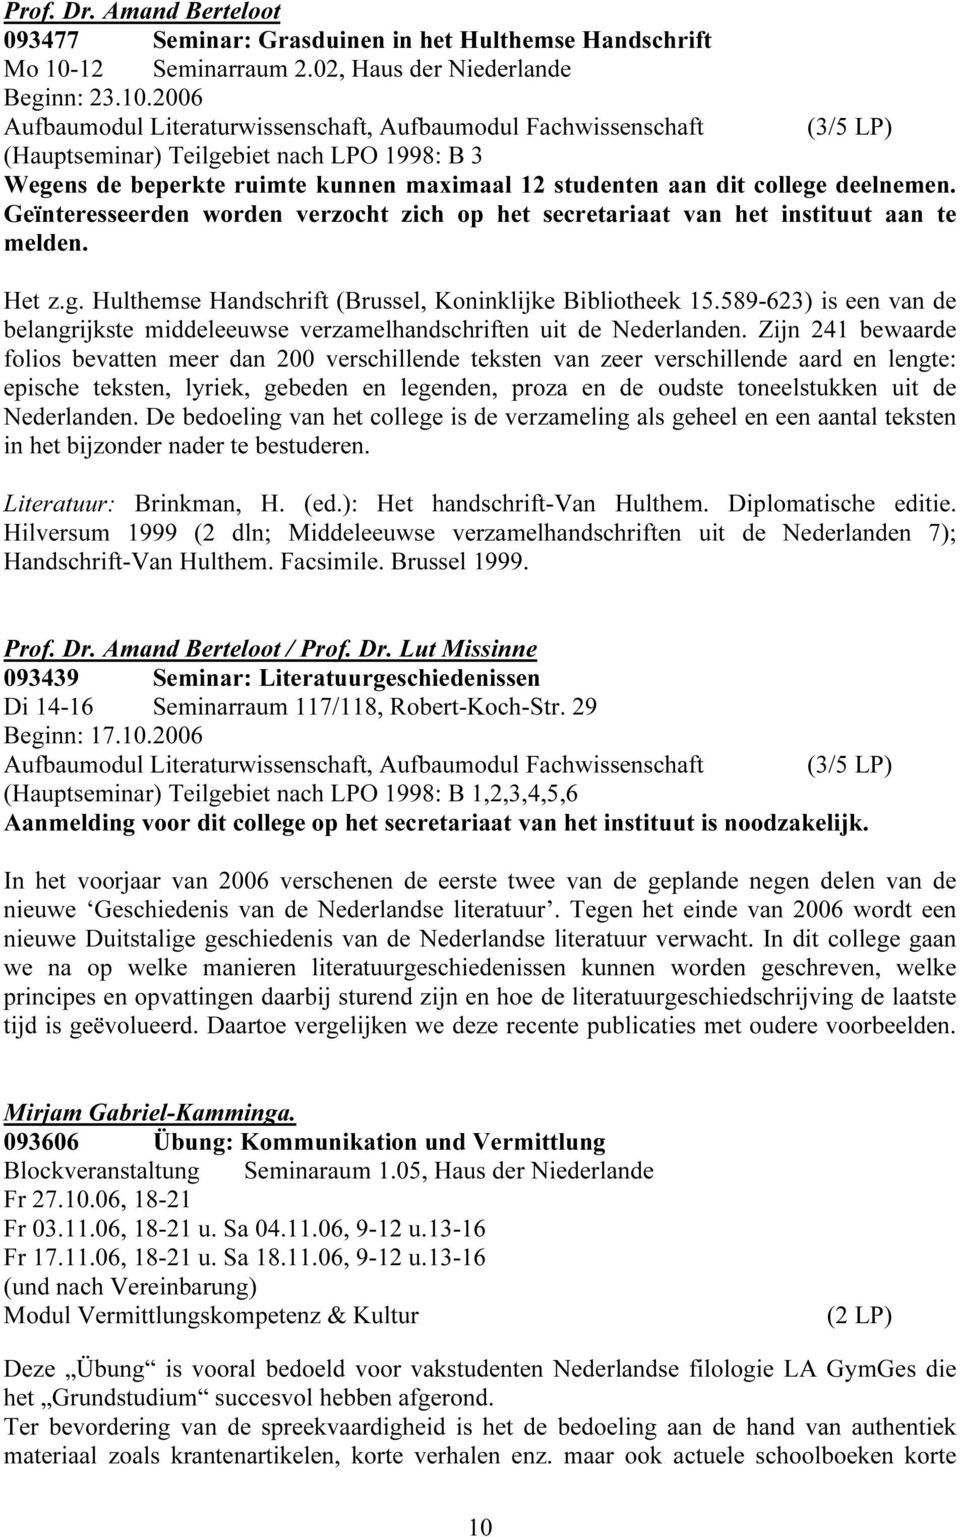 2006 Aufbaumodul Literaturwissenschaft, Aufbaumodul Fachwissenschaft (3/5 LP) (Hauptseminar) Teilgebiet nach LPO 1998: B 3 Wegens de beperkte ruimte kunnen maximaal 12 studenten aan dit college